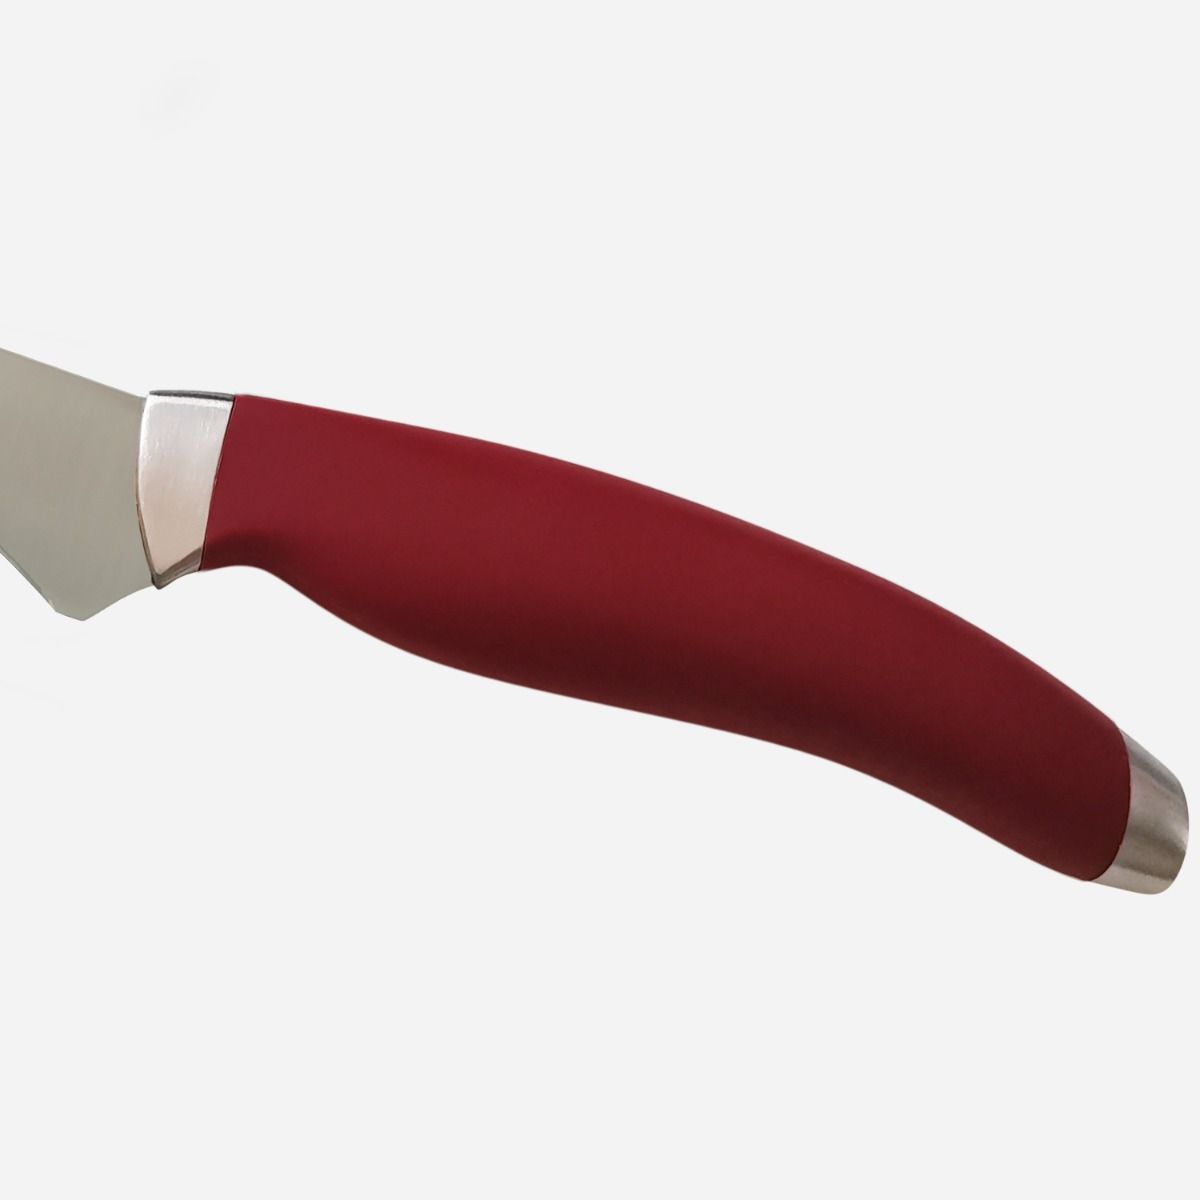 Bread Knife 22 cm  Stainless Steel Berkel Teknica Handle Red Resin